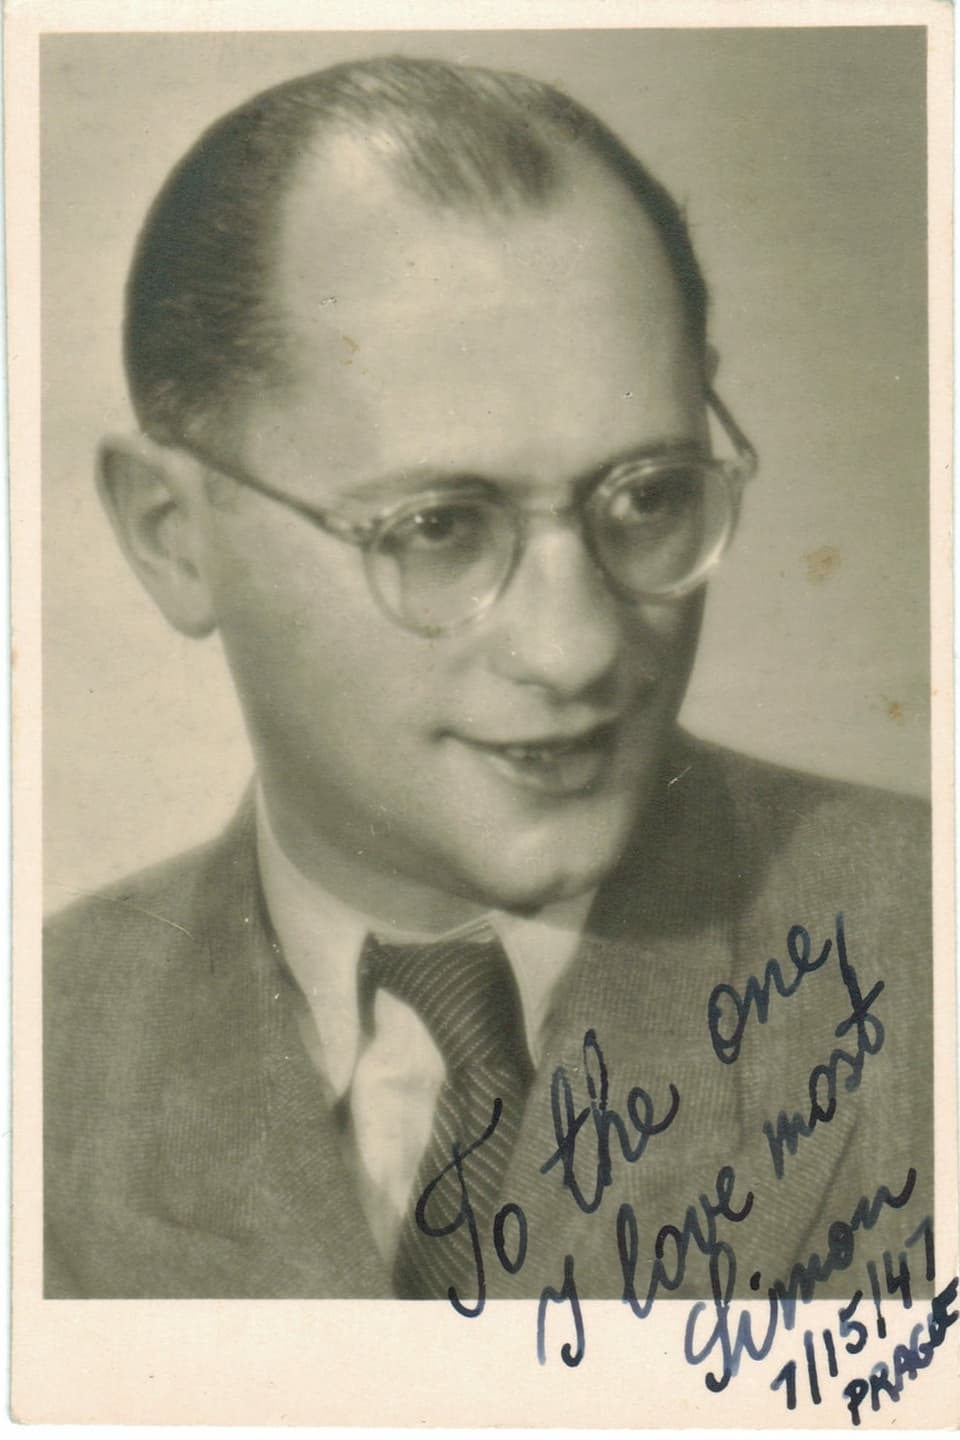 Ein Passbild zeigt einen Mann mit Brille – eine handschriftliche Widmung ist auf dem Bild zu sehen.